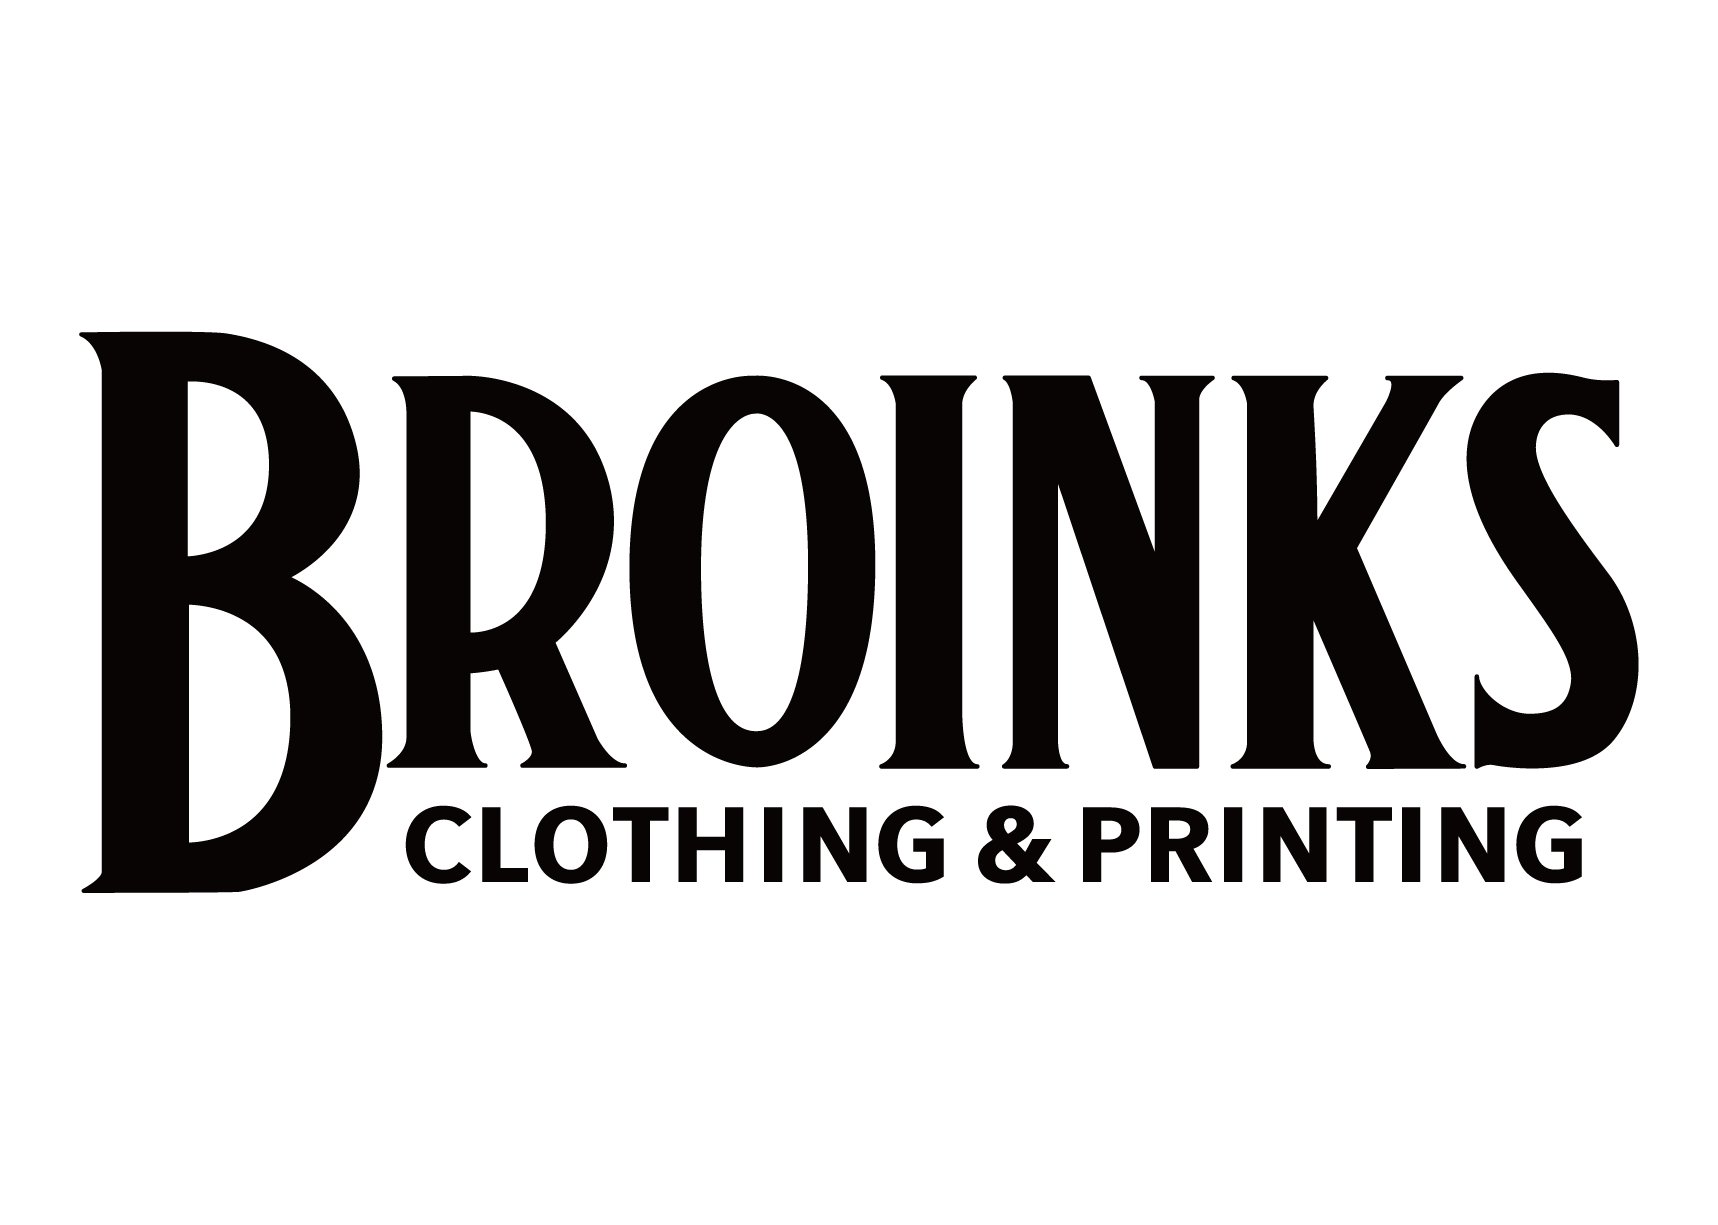 鴻巣市でオリジナルTシャツやチームウェアの制作なら『BROINKS』